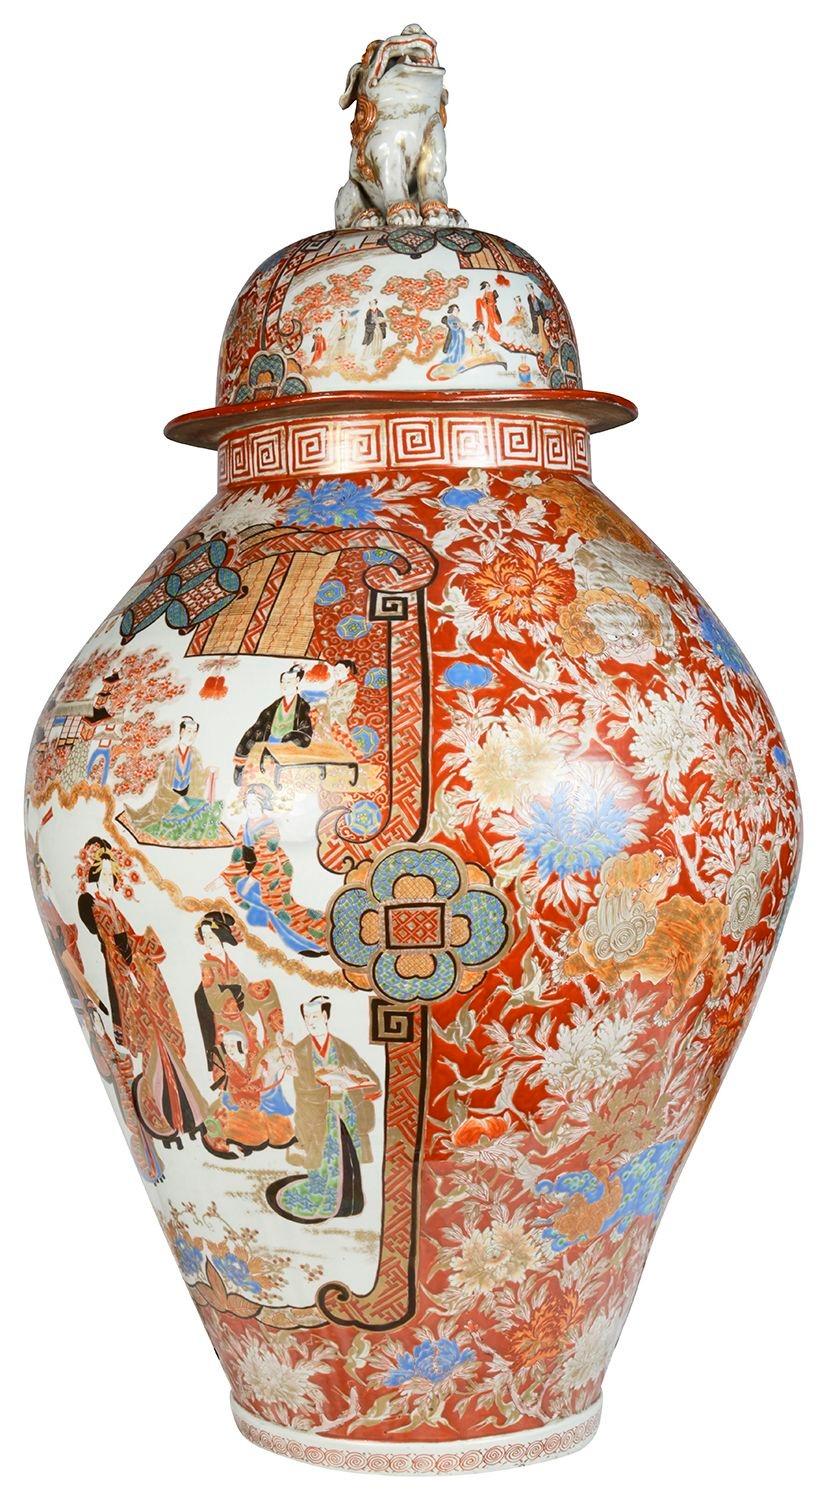 Un grand et impressionnant vase à couvercle Imari japonais du 19e siècle. Le couvercle est orné d'un magnifique fleuron mythique en forme de chien de Foo. Le fond orange classique est orné d'un décor de rinceaux et de fleurs, et des panneaux peints